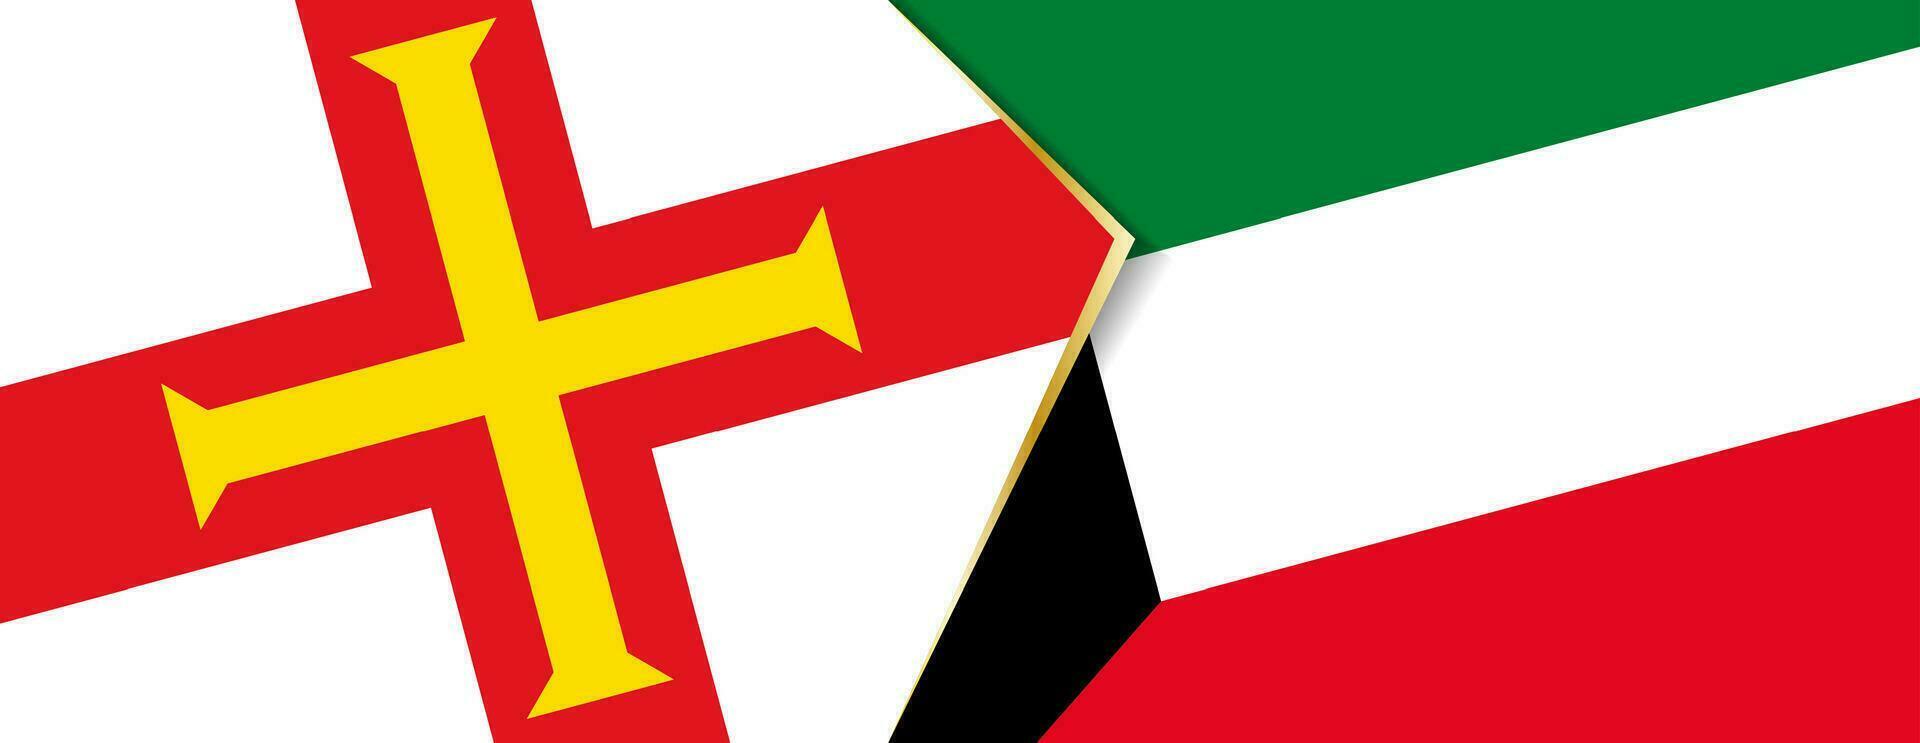 Guernesey et Koweit drapeaux, deux vecteur drapeaux.